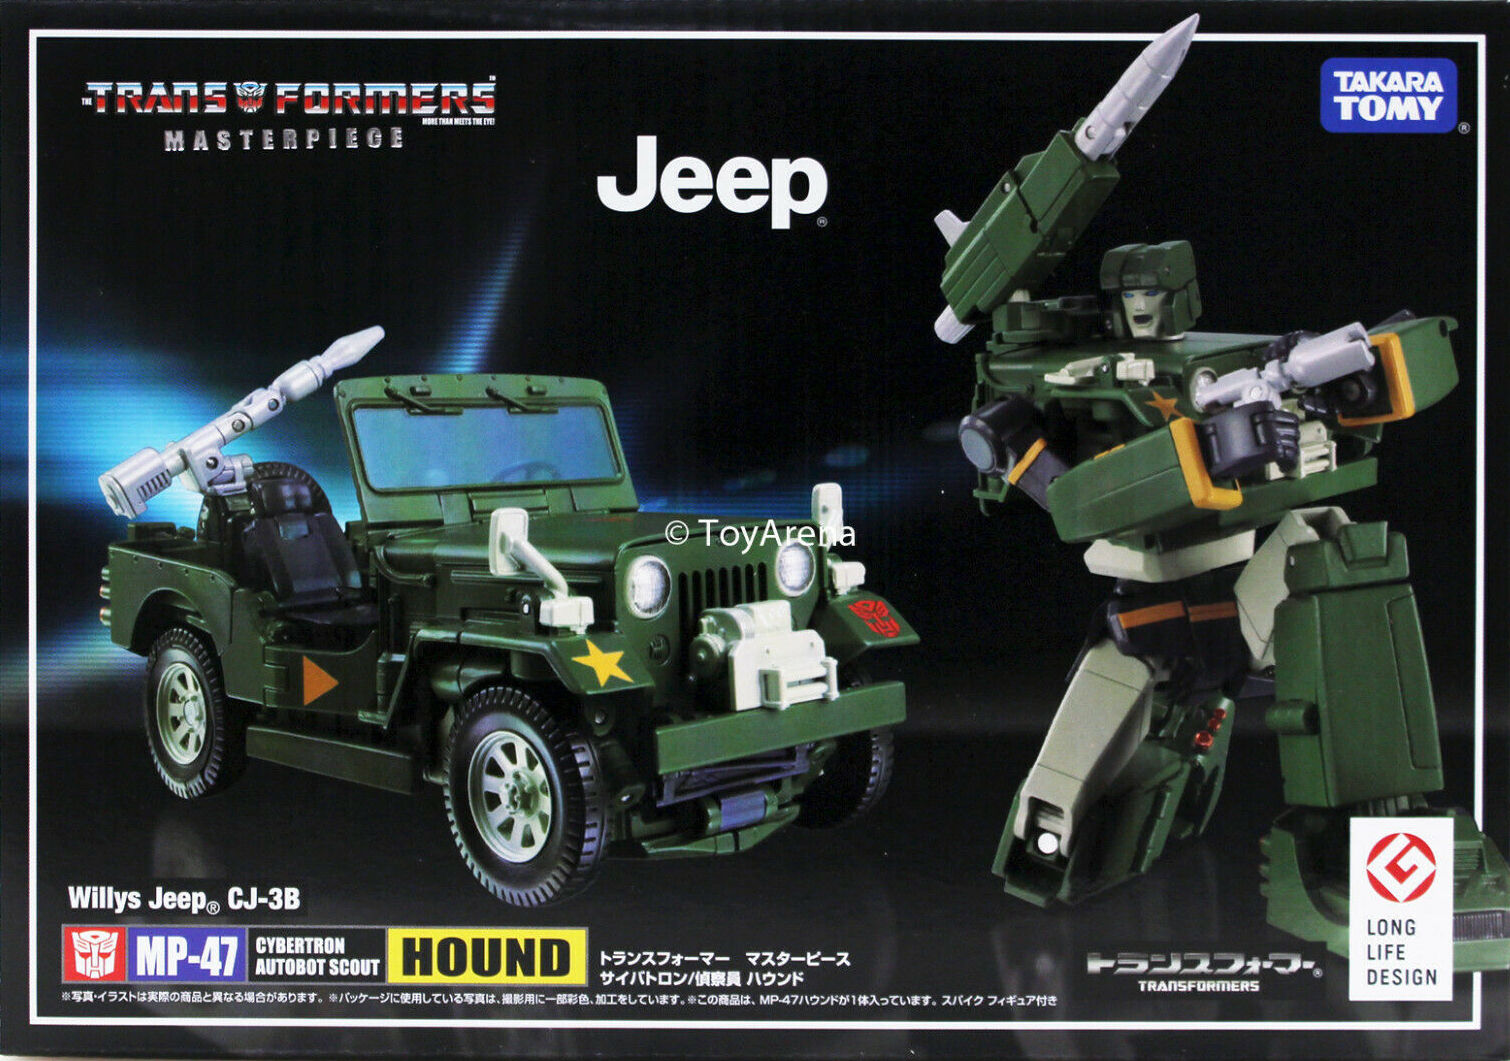 IN HAND MISB in USA Transformers Takara Masterpiece Jeep MP-47 G1 Hound 